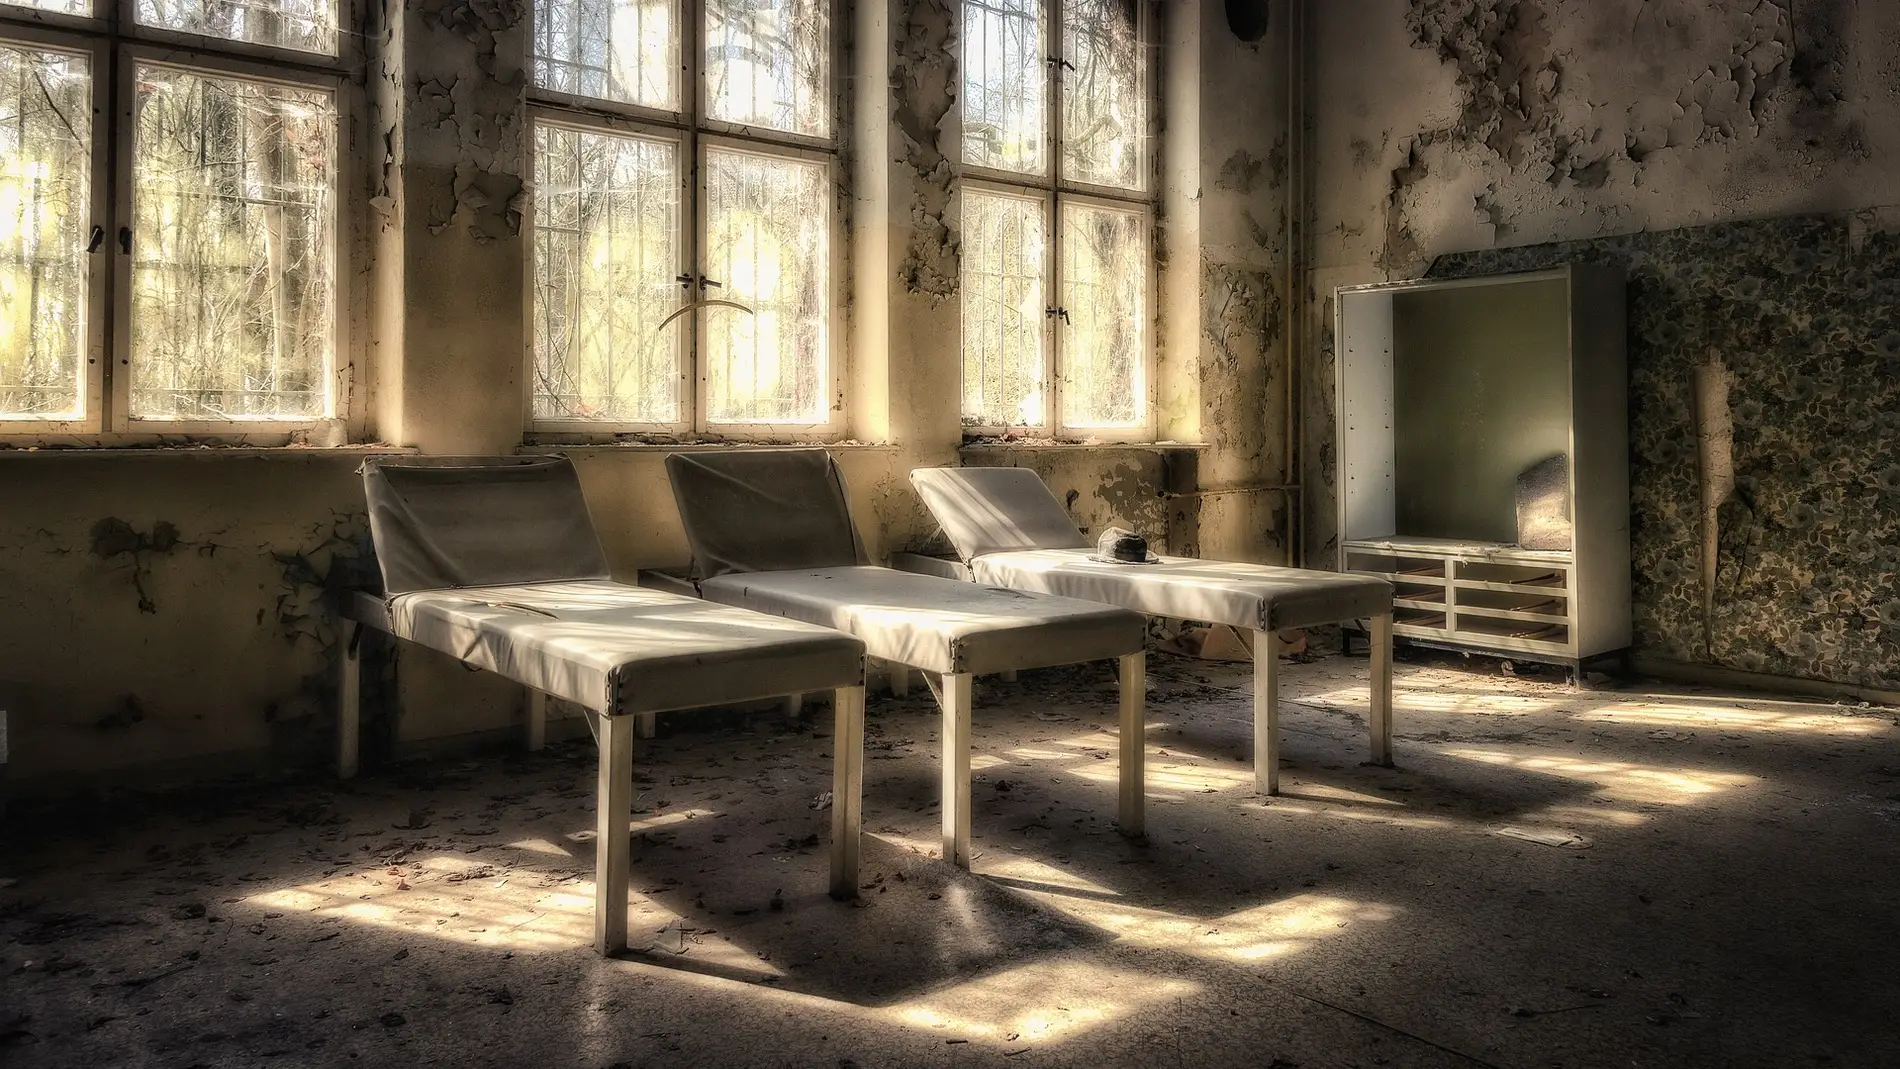 Sanatorio abandonado